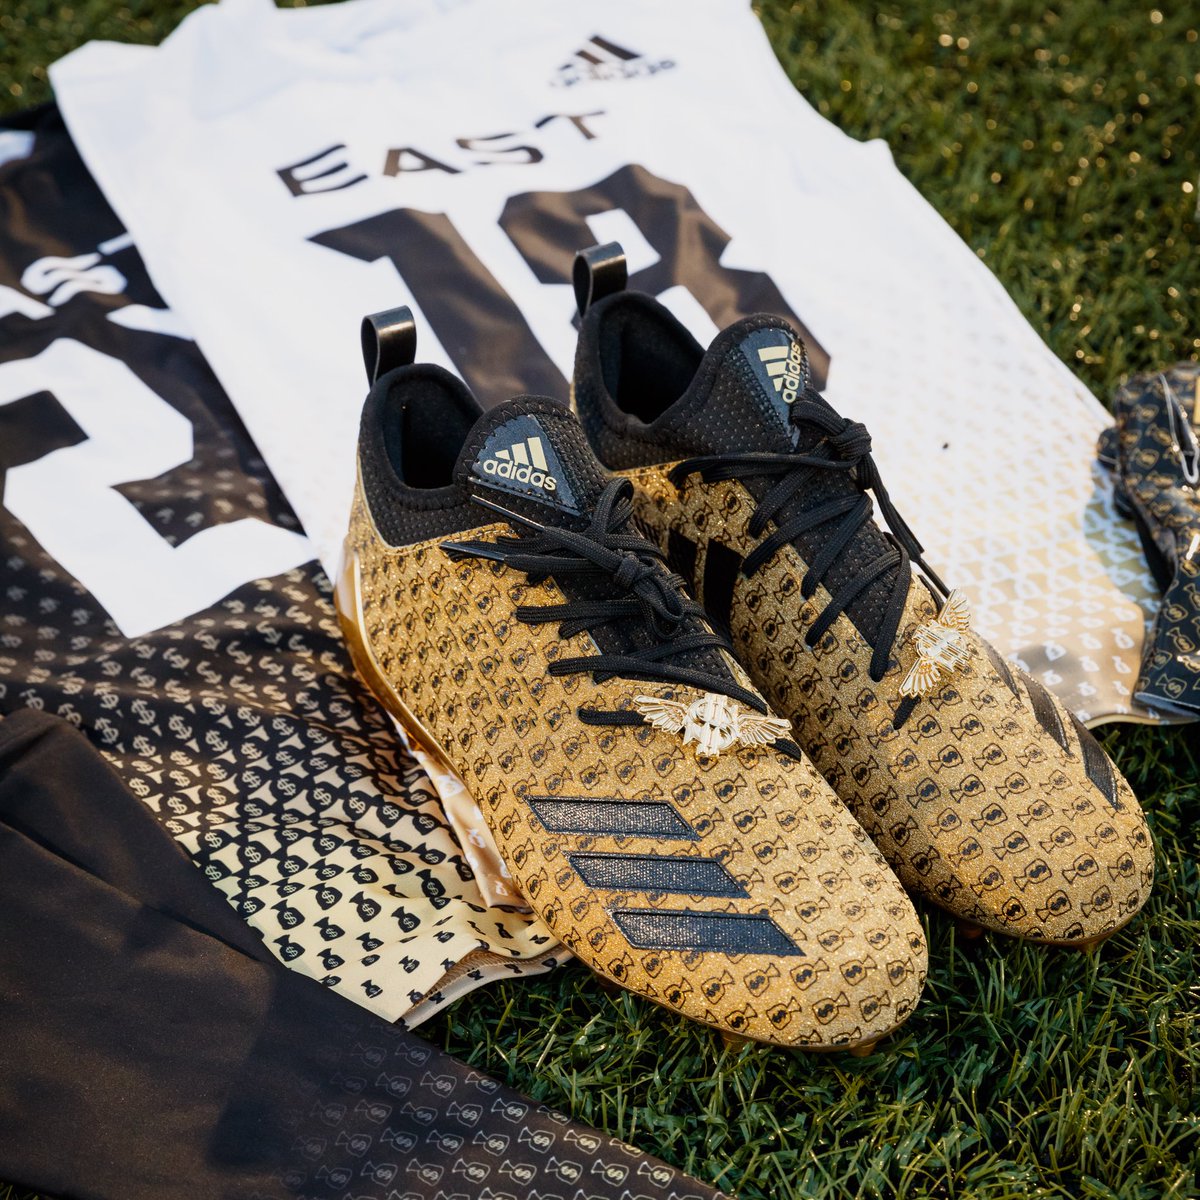 ساخت کفش های فوتبال از جنس طلا +تصاویر